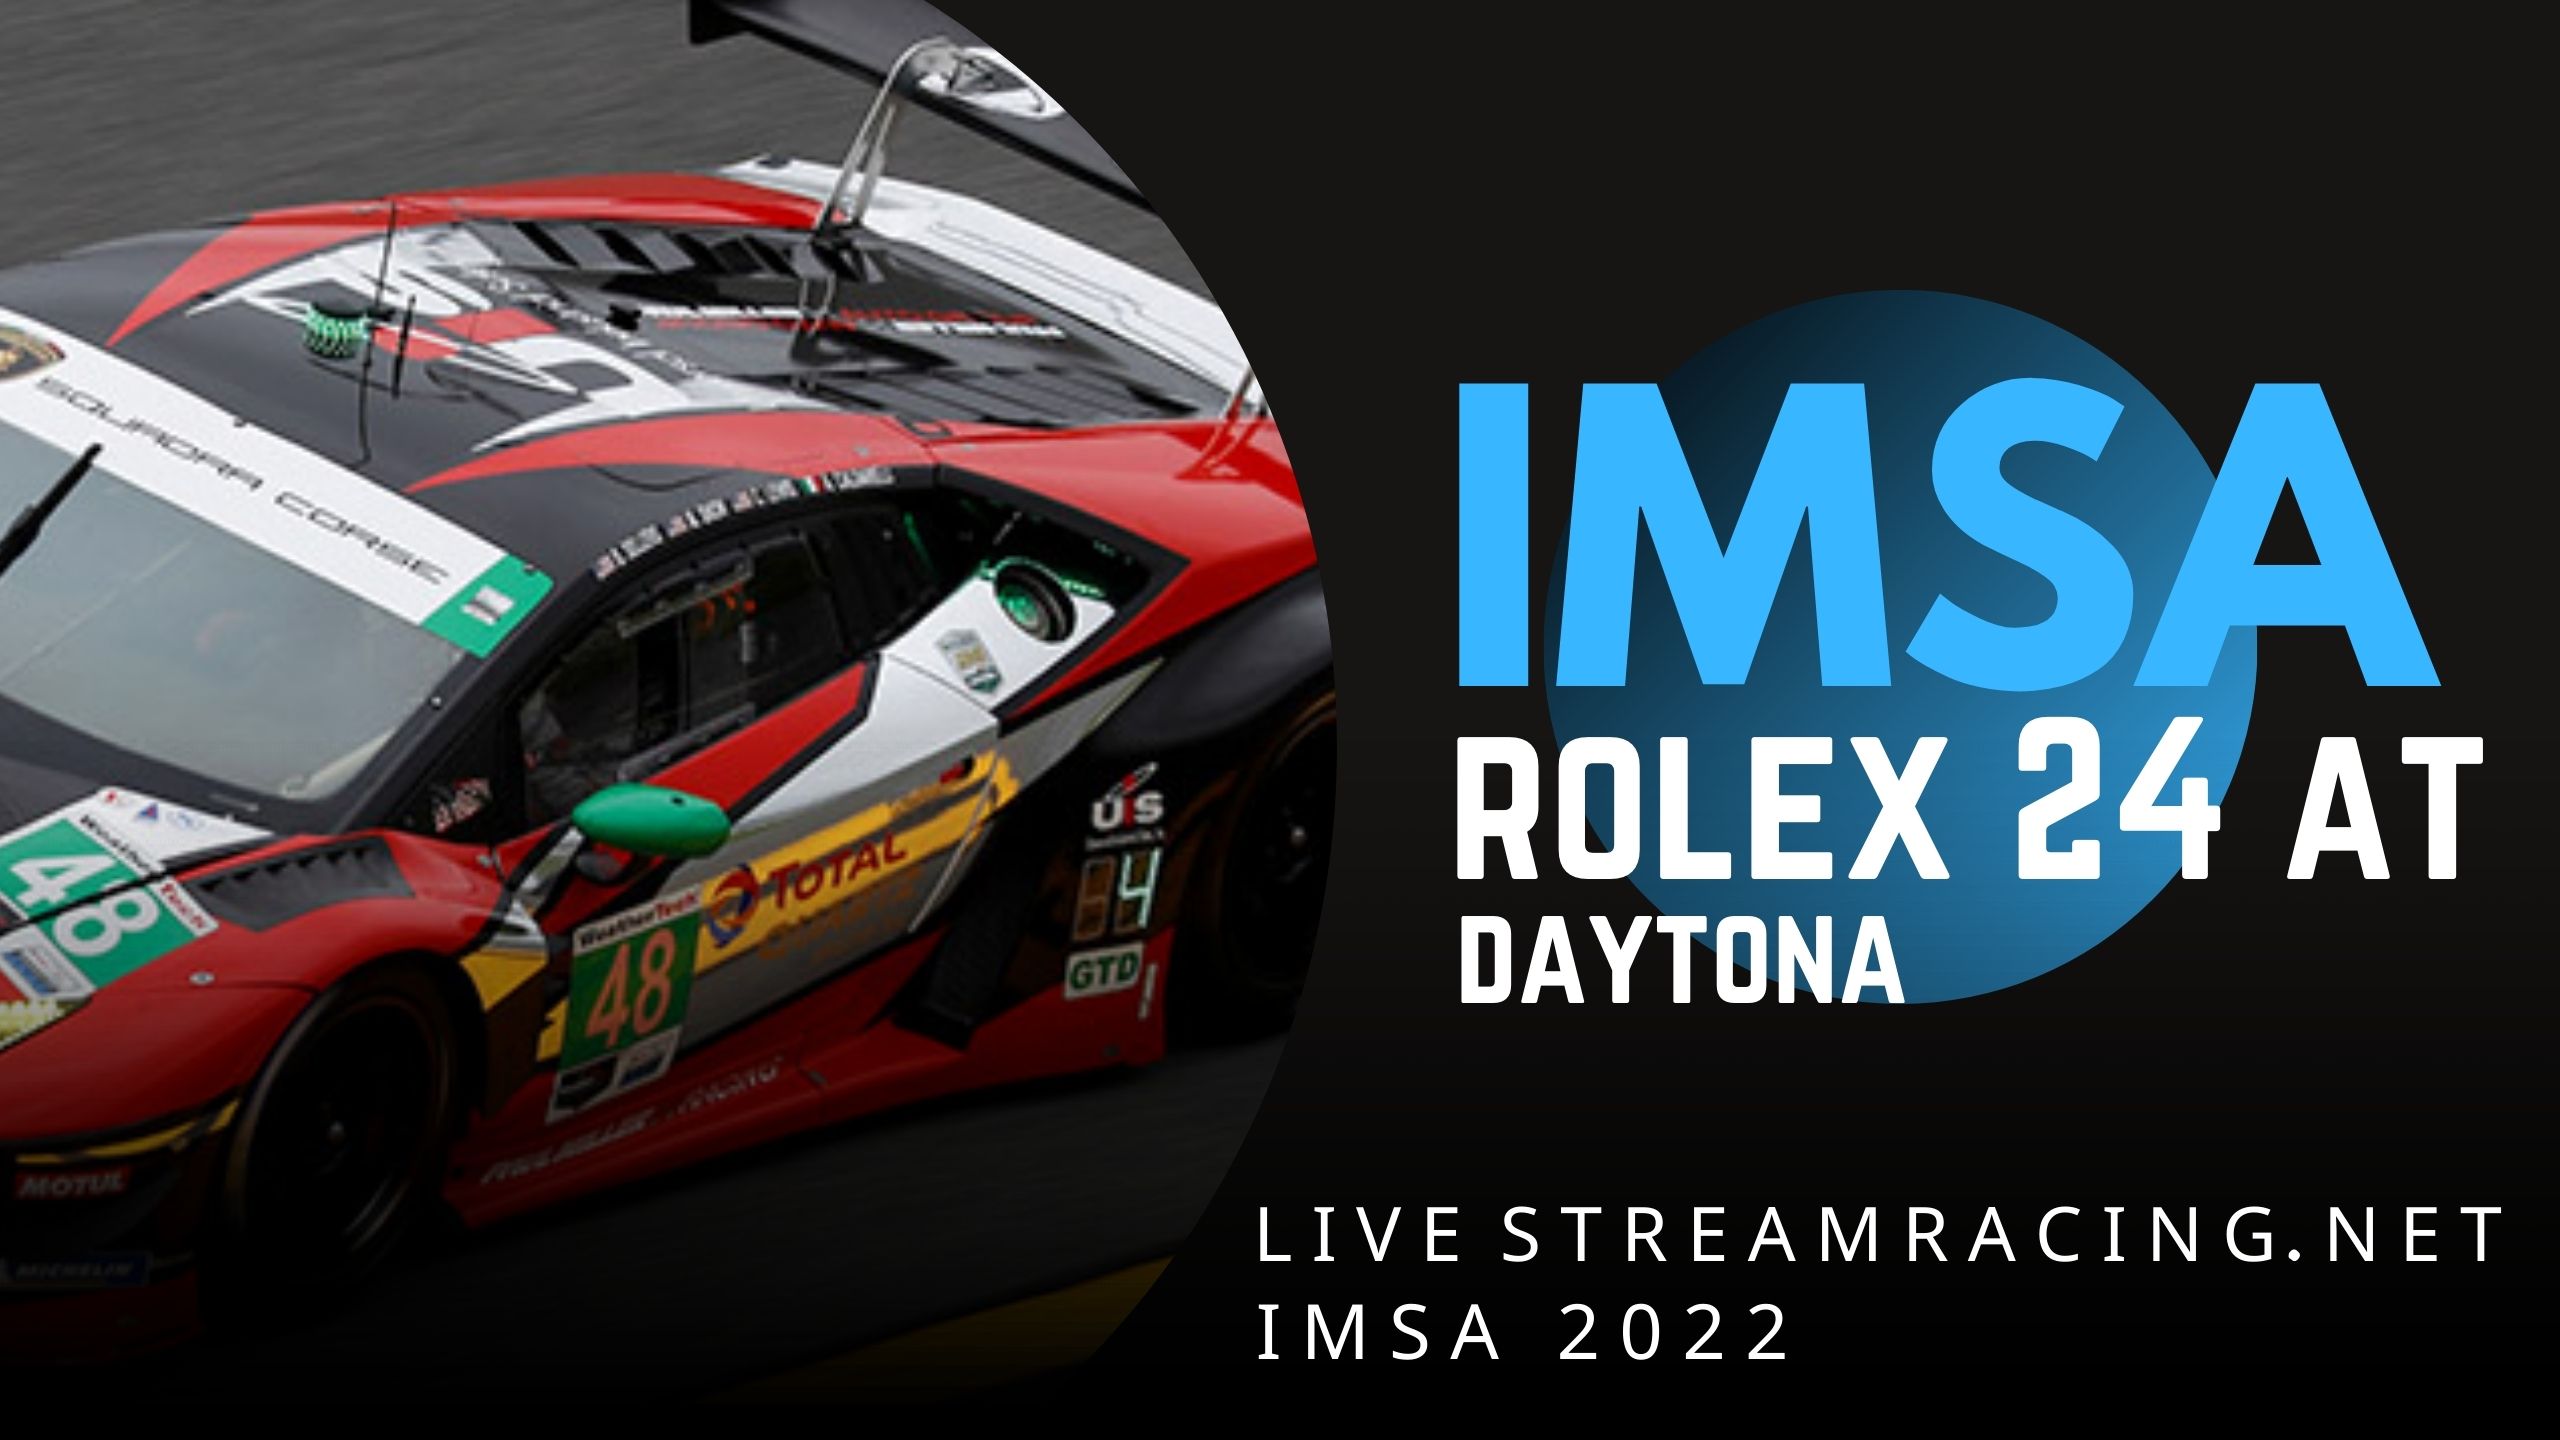 Rolex 24 At Daytona Live Stream 2022 IMSA slider